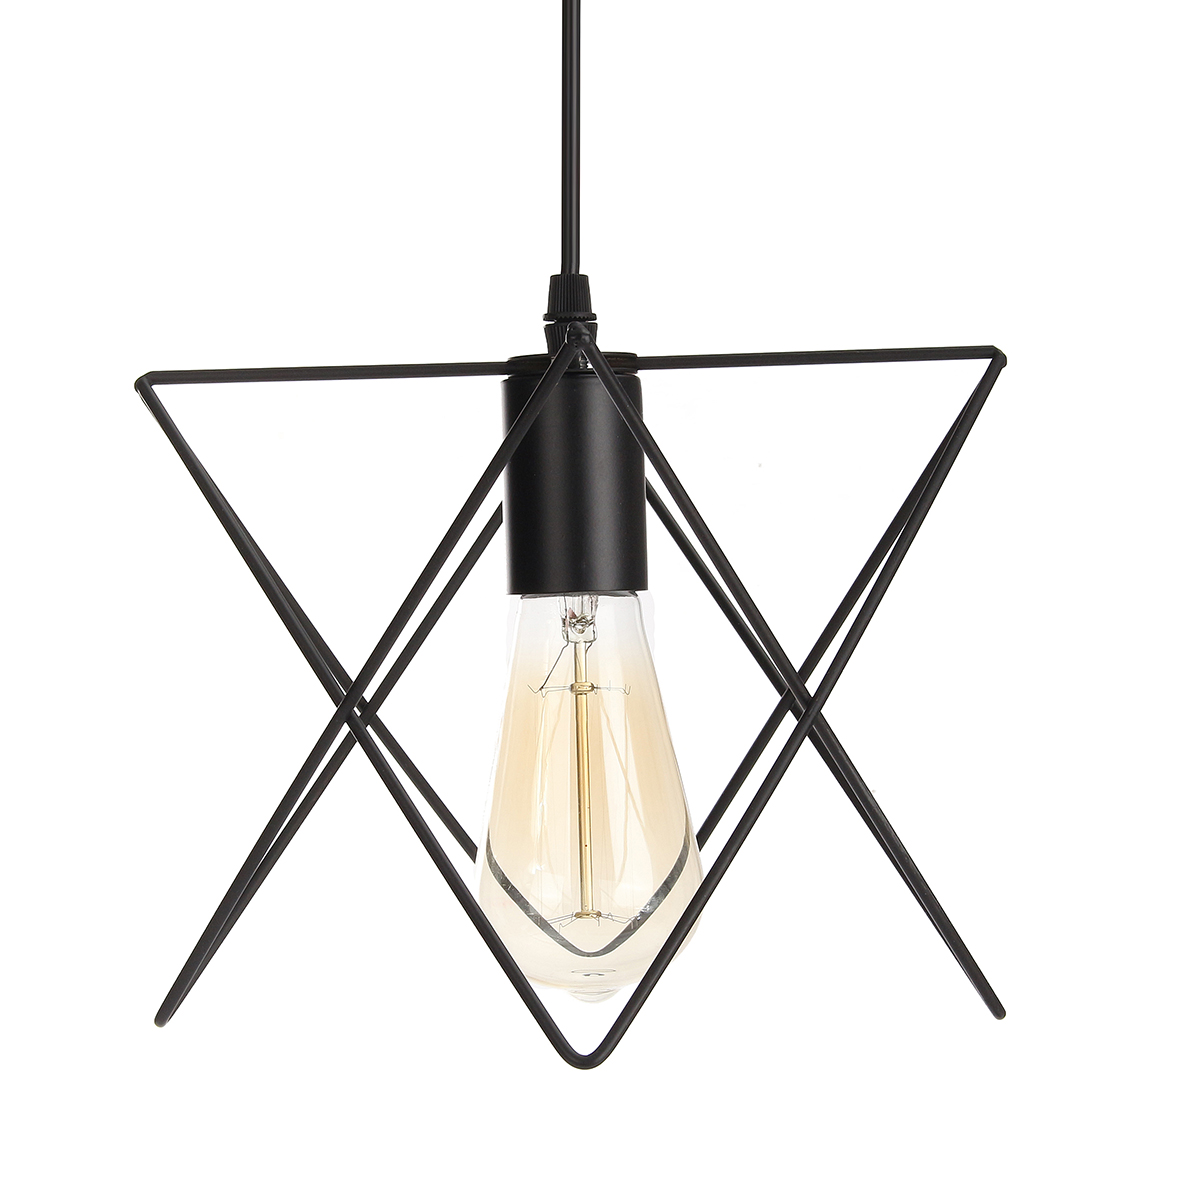 3-In-1-Metal-Vintage-Ceiling-Light-Pendant-Lamp-Cage-Lampshade-Fixture-Chandelier-Indoor-Lighting-1118747-7